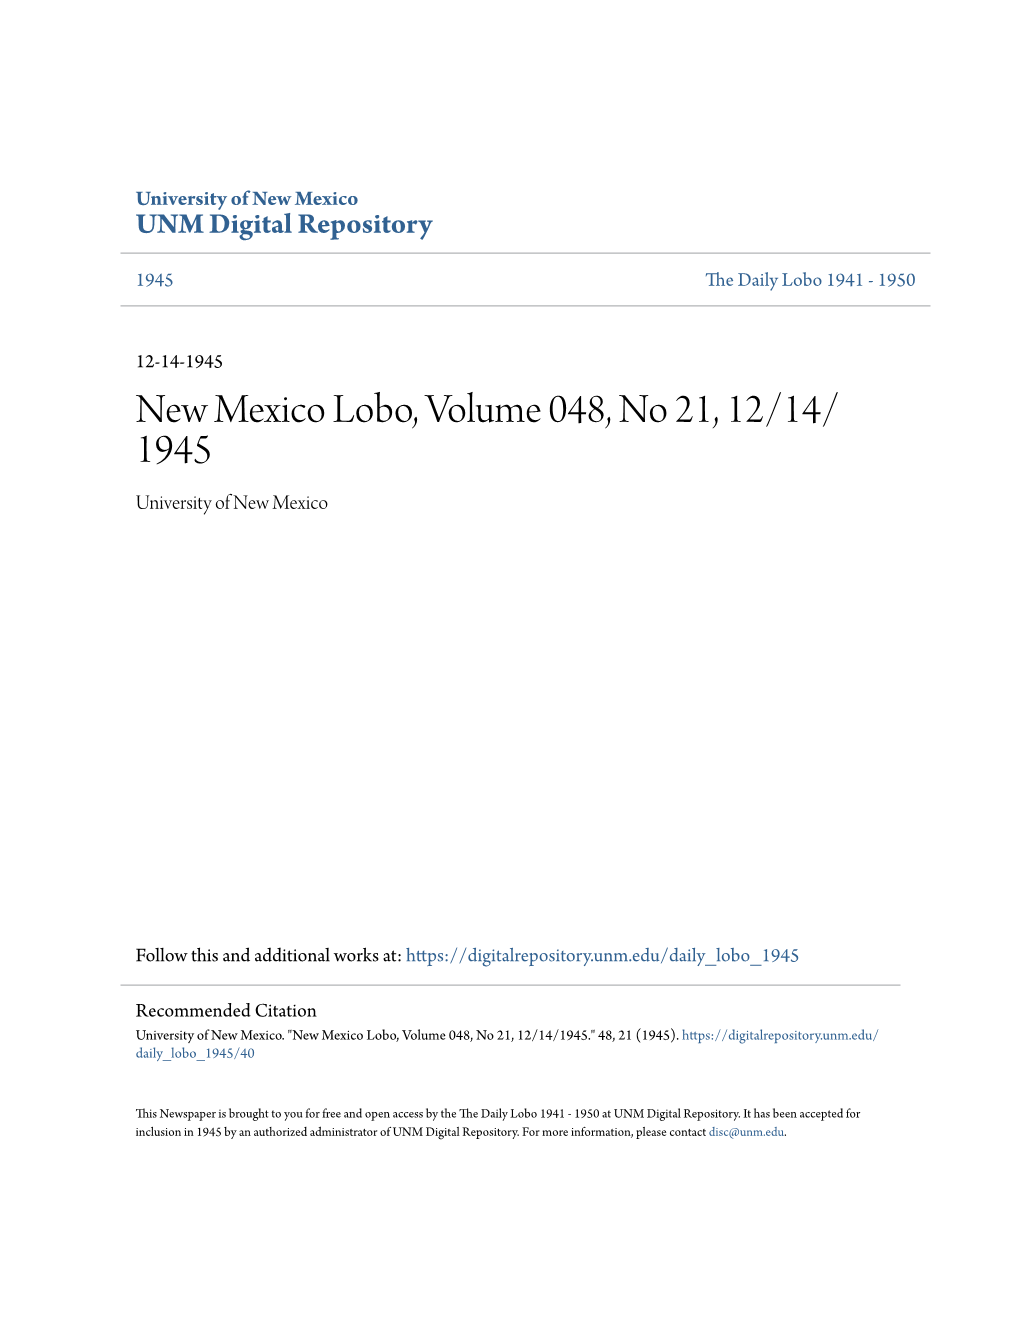 New Mexico Lobo, Volume 048, No 21, 12/14/ 1945 University of New Mexico